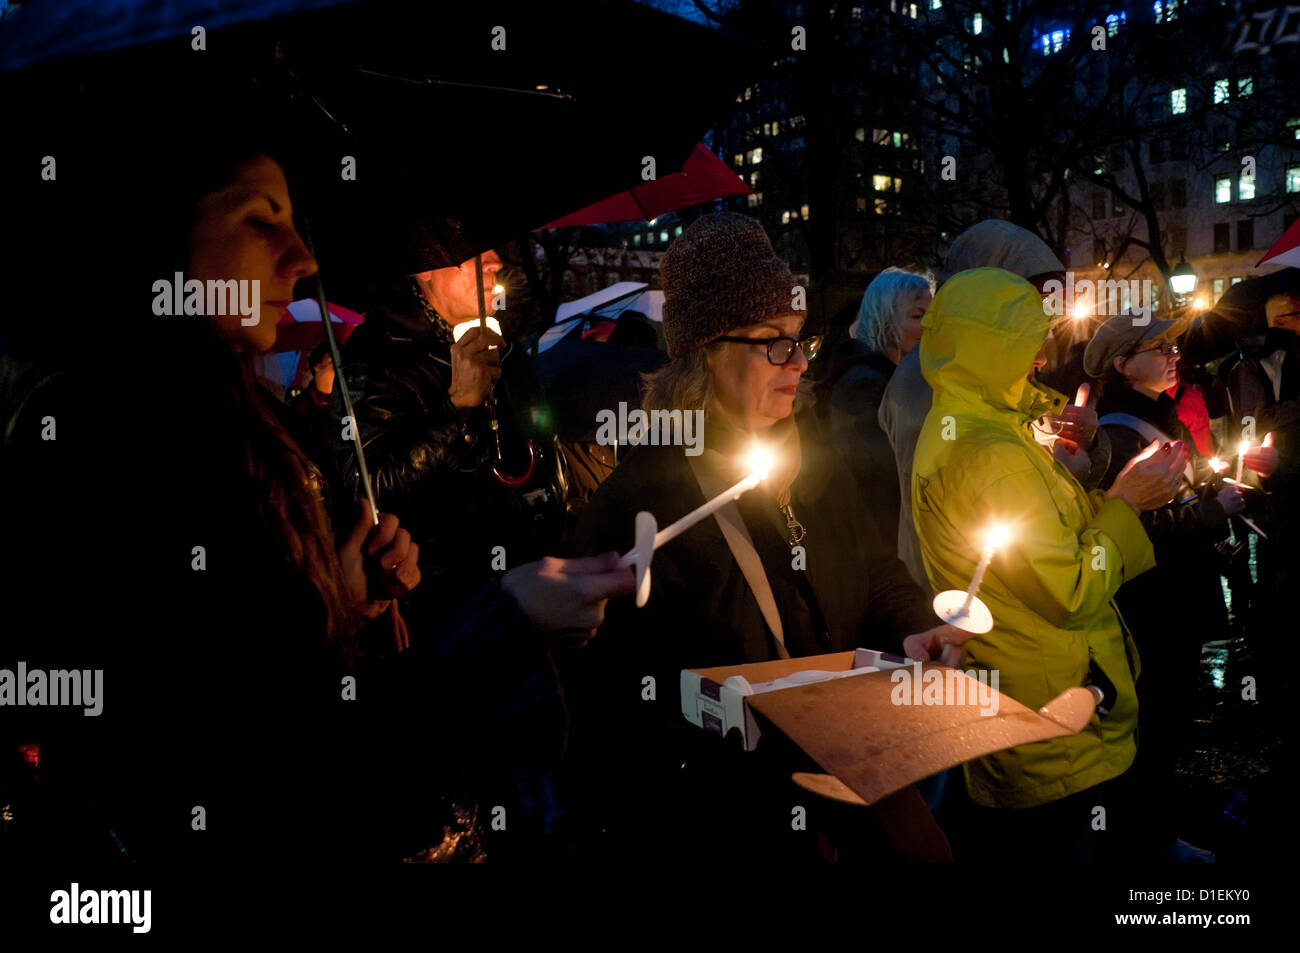 New York, NY - 16. Dezember 2012, die New Yorker im Washington Square Park für ein Candlelight Vigil, die Opfer von Sandy Hook Elementary School Shooting zu trauern und zu fordern strengere Reglementierung von Waffenbesitz Gesetze gesammelt. Stockfoto